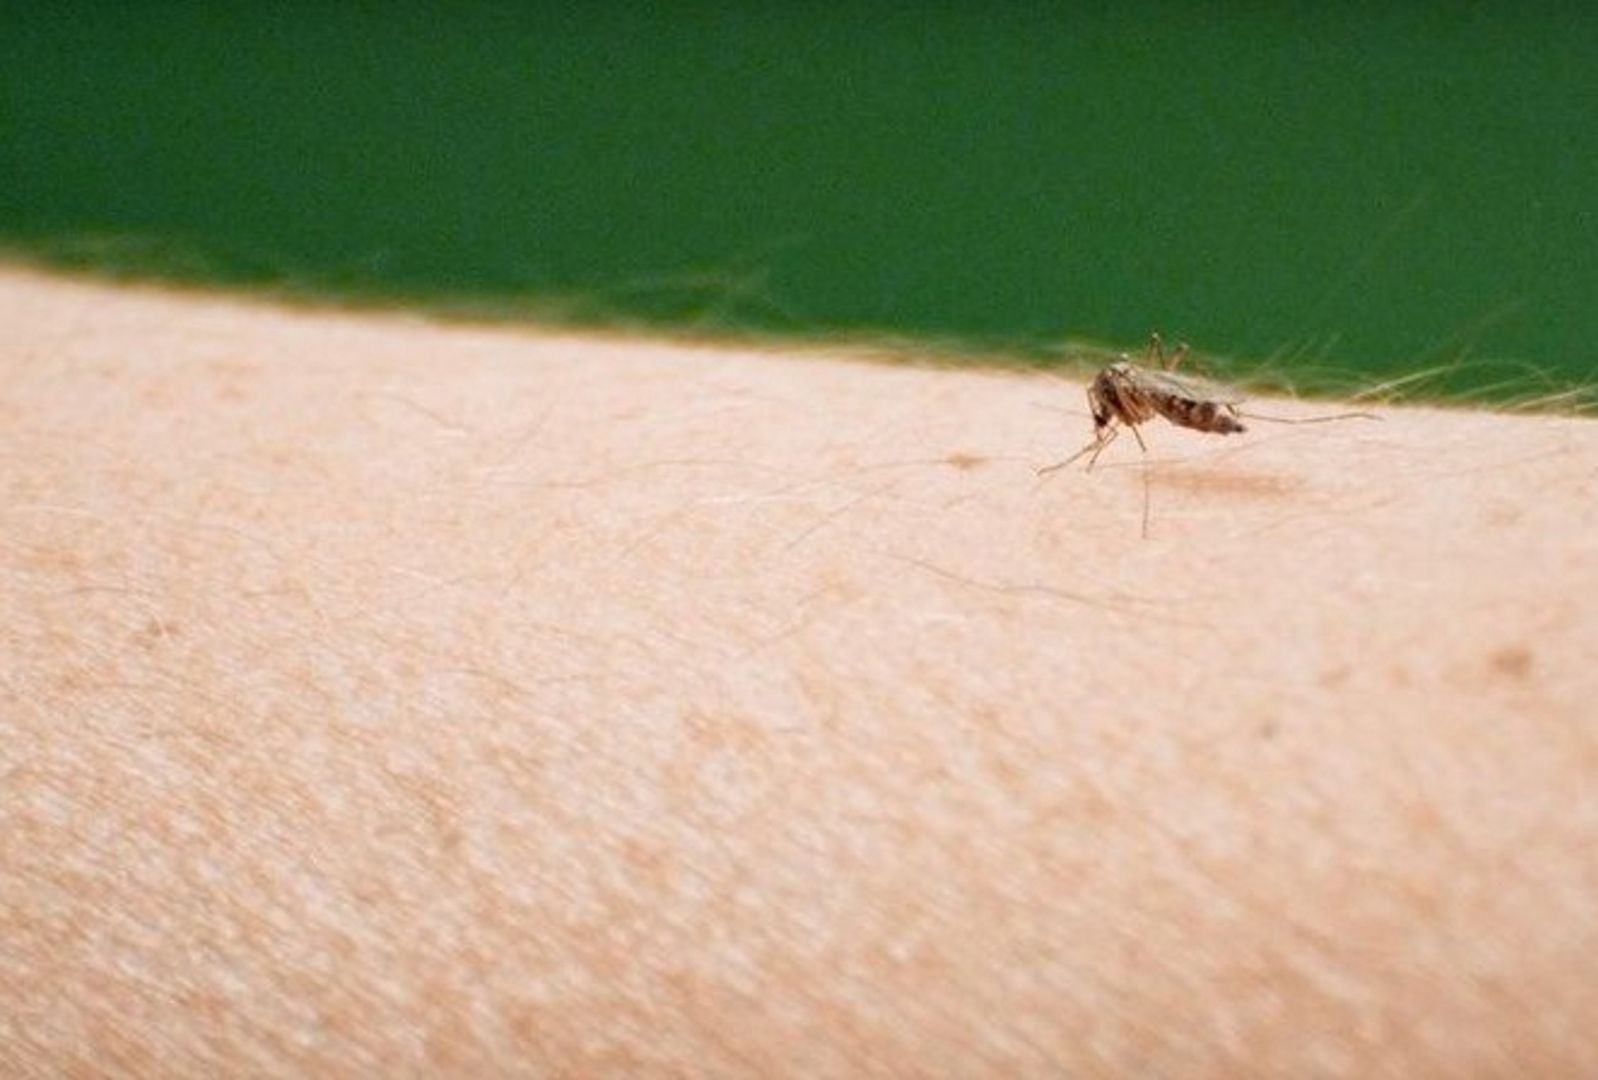 Sposoby na odstraszenie komarów. Leśnicy radzą, co działa najlepiej